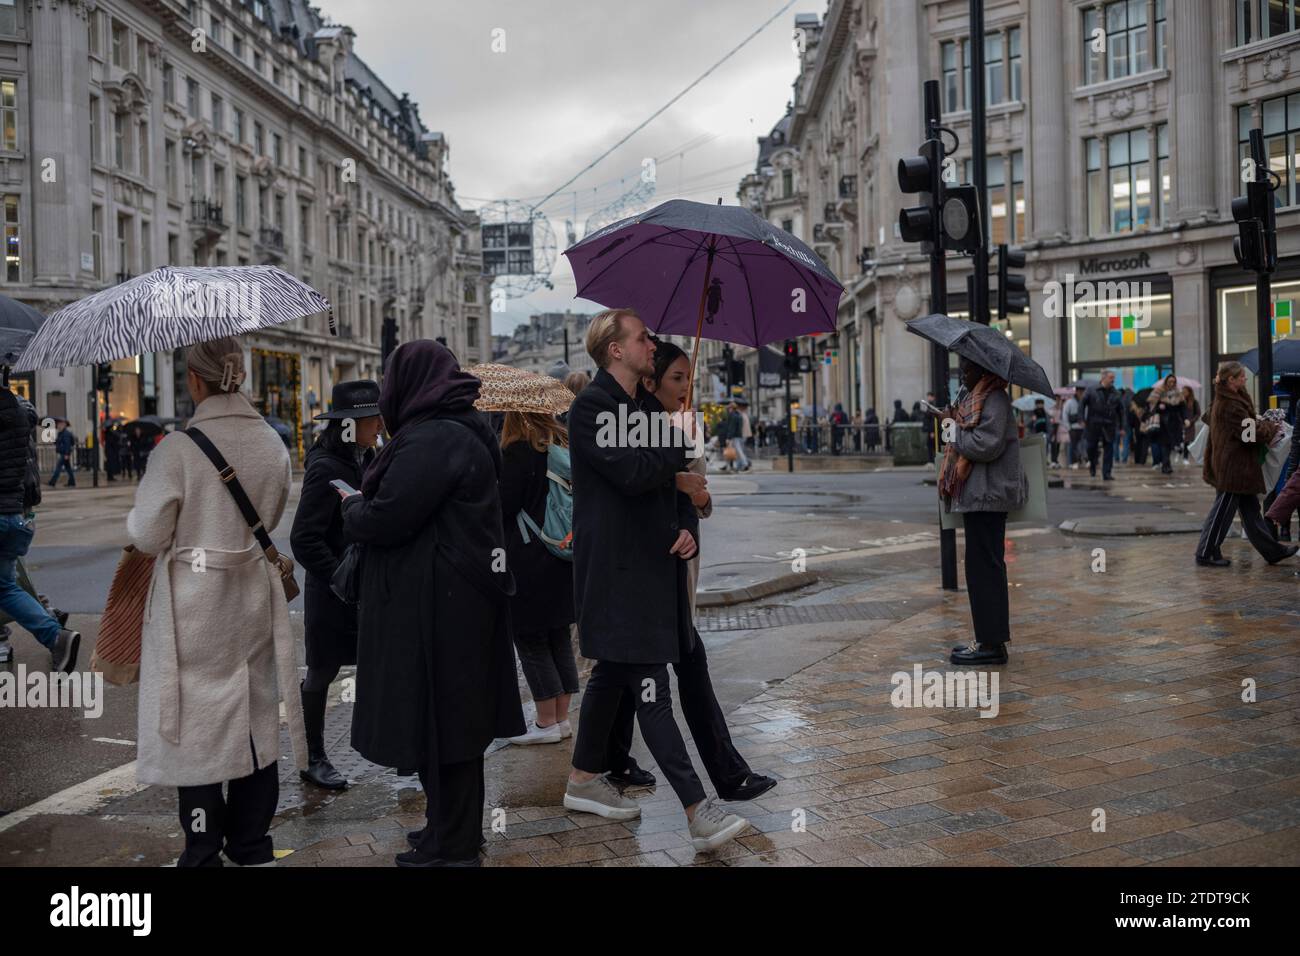 Weihnachtseinkäufer mit Regenschirmen im Oxford Circus an einem nassen Wintertag, London, England, Großbritannien Stockfoto